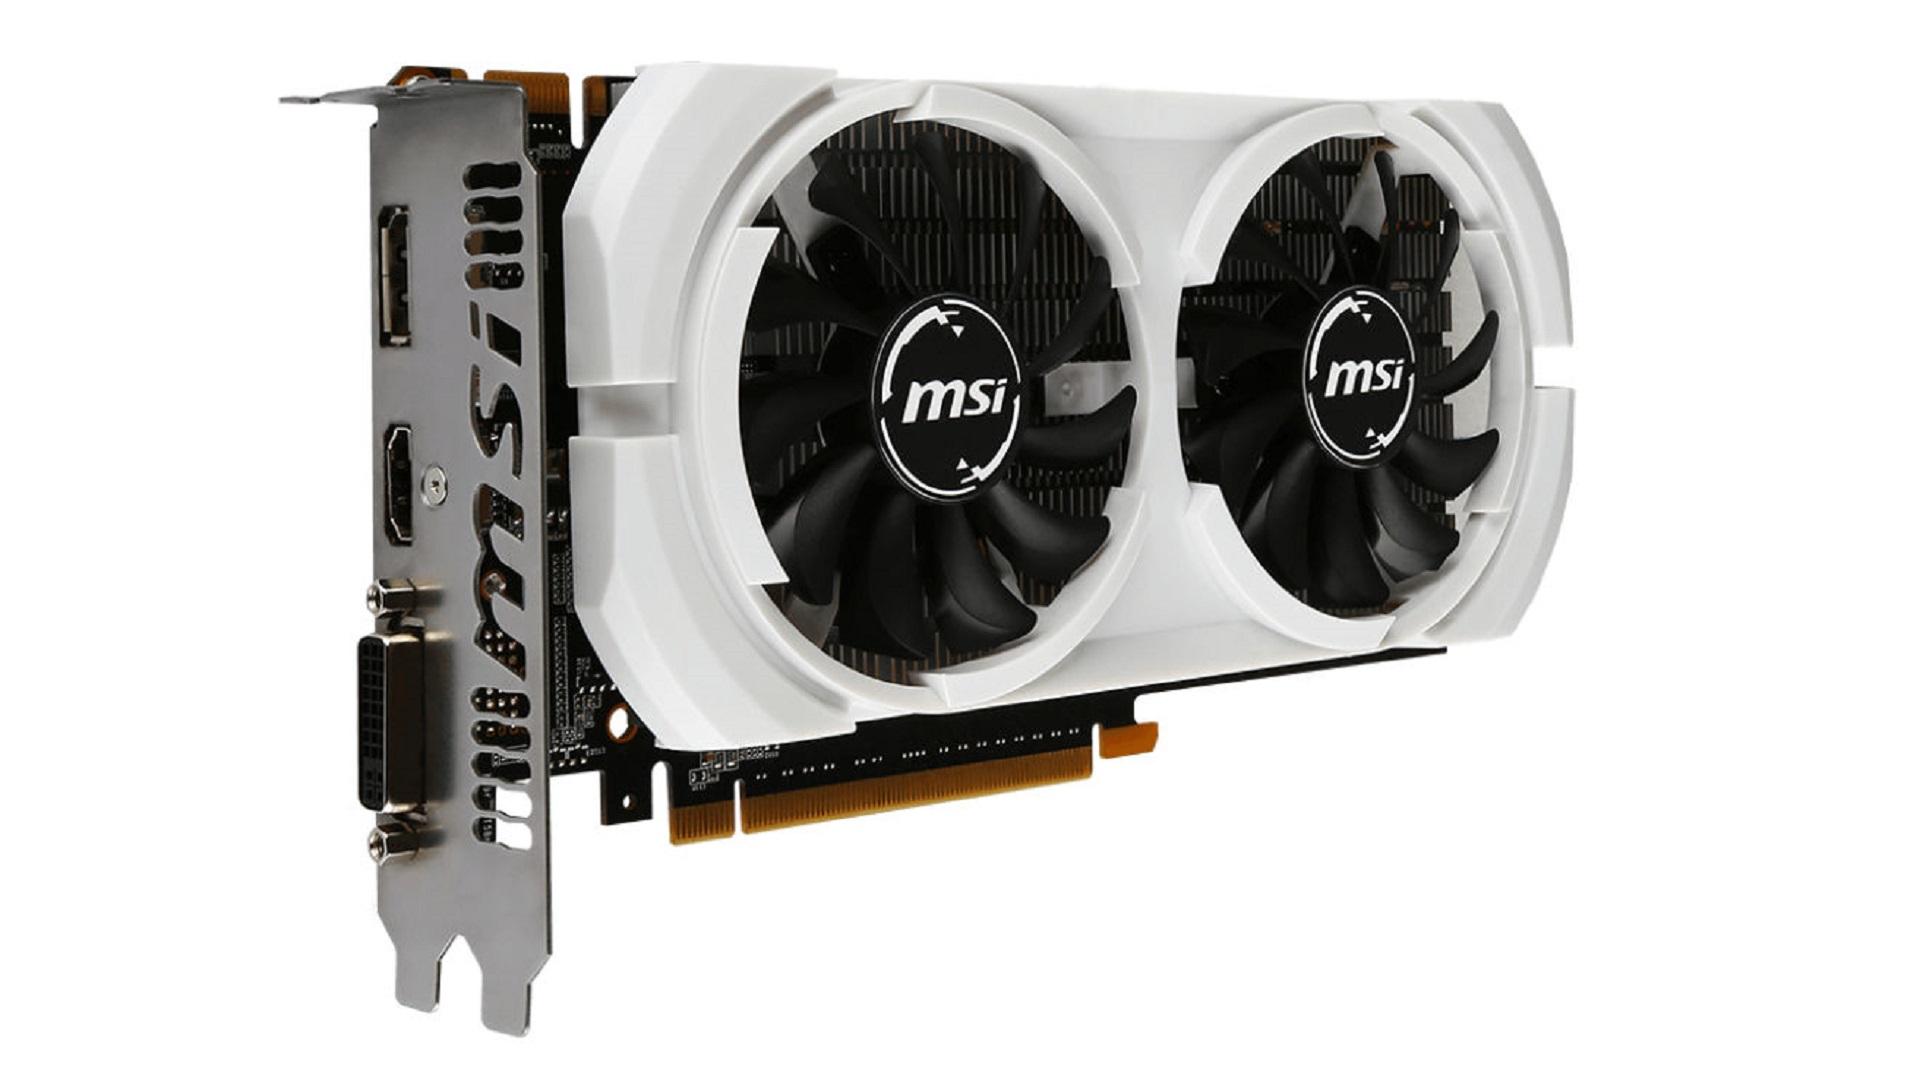 MSI công bố hai VGA sử dụng GPU NVIDIA GeForce GTX 950 mới